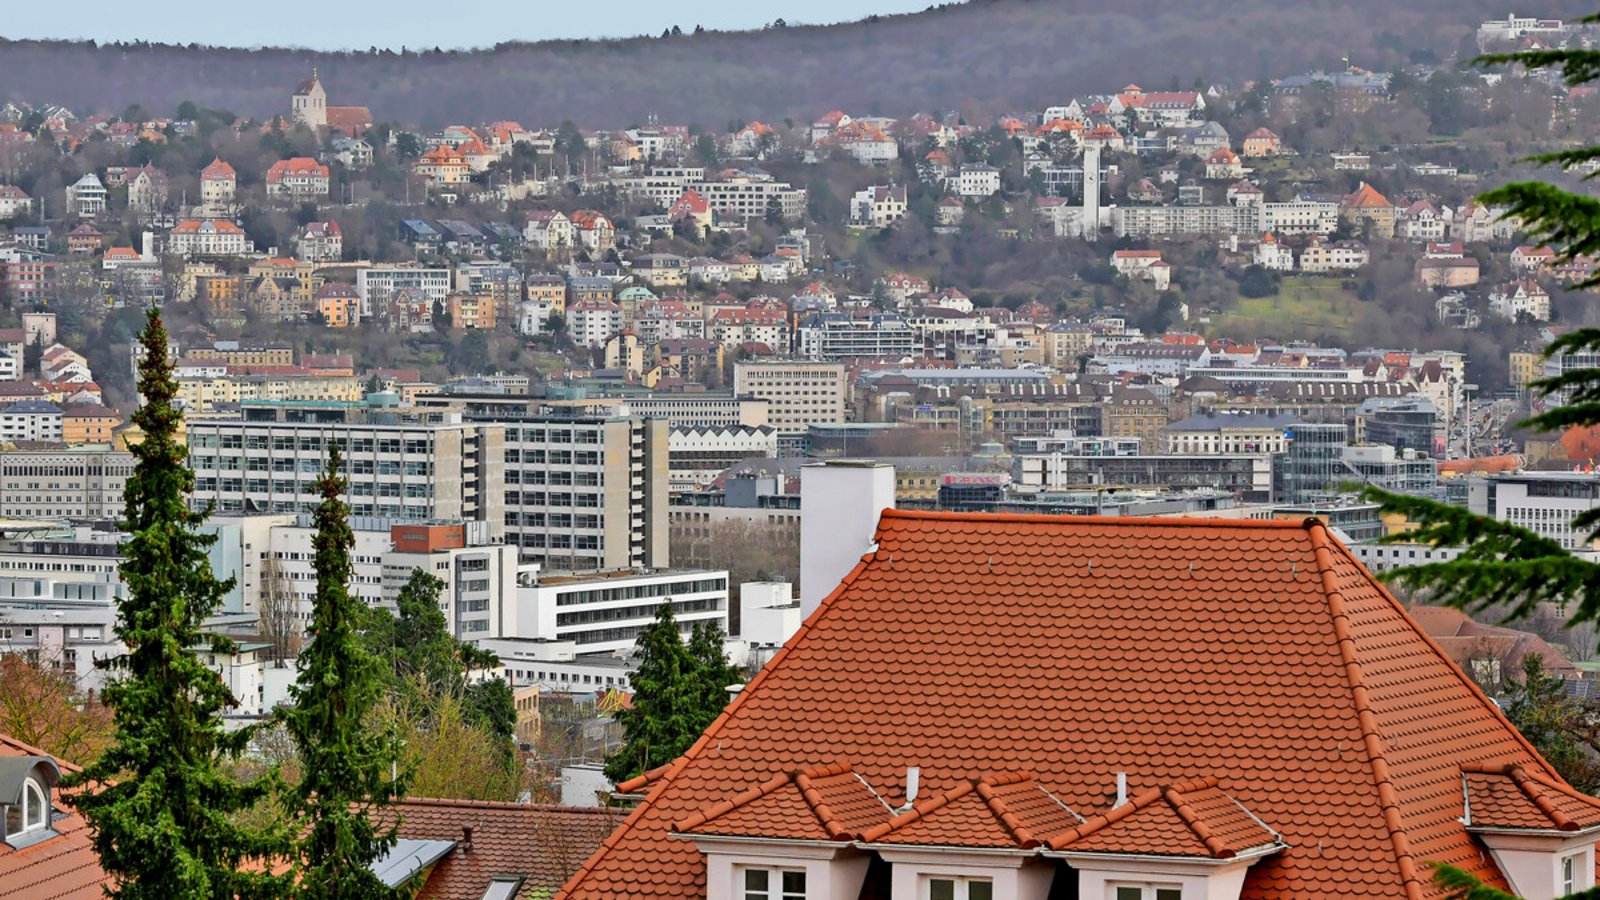 Wohnen in Stuttgart ist meist teuer. Wie viel verlangt werden darf, wird im neuen Mietspiegel ermittelt.Foto: Lichtgut/Max Kovalenko